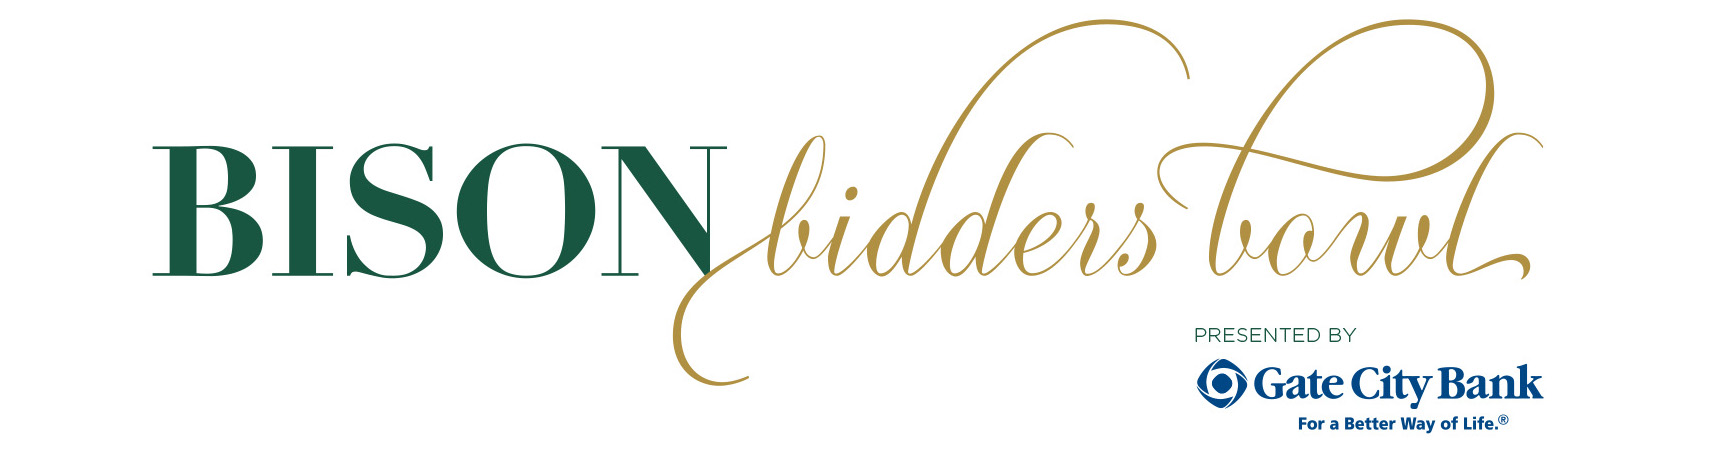 Logo: Bison Bidders Bowl